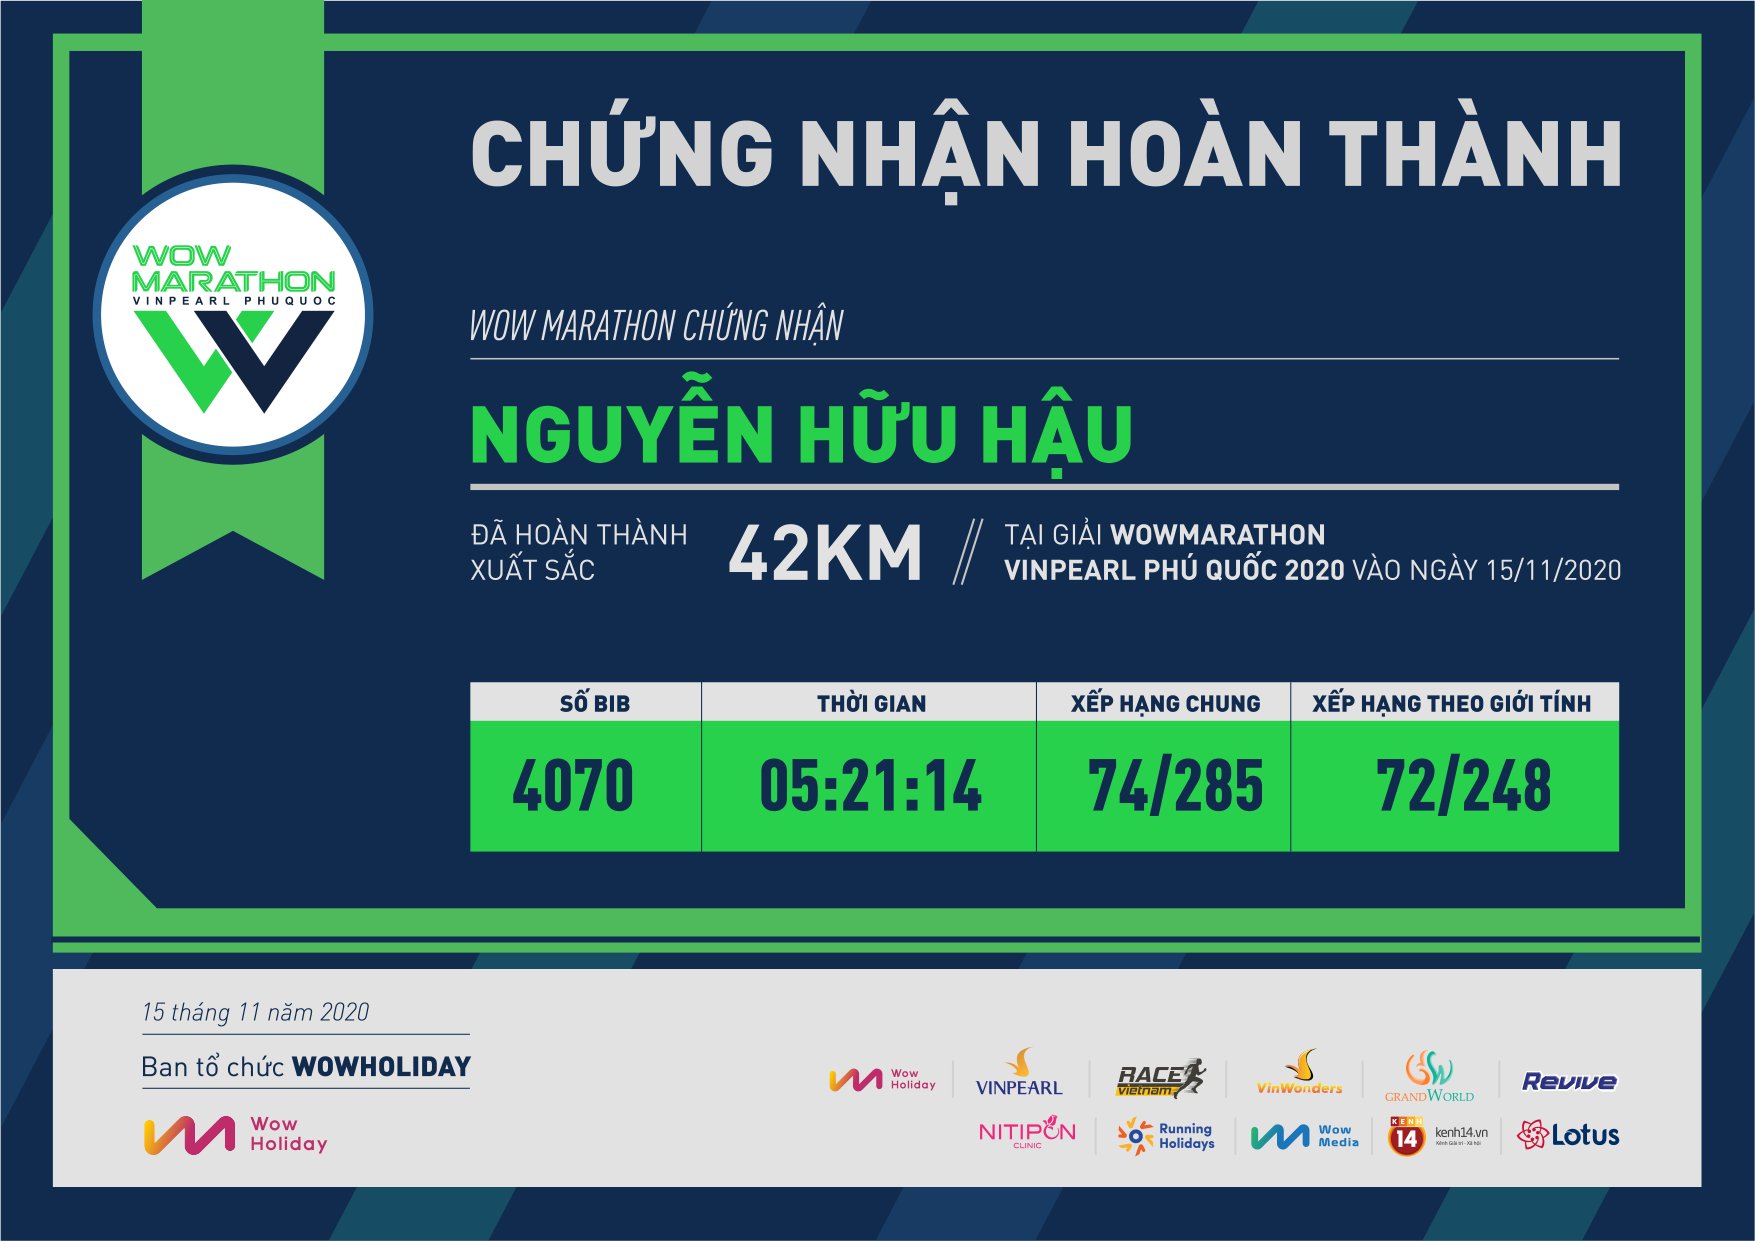 4070 - Nguyễn Hữu Hậu